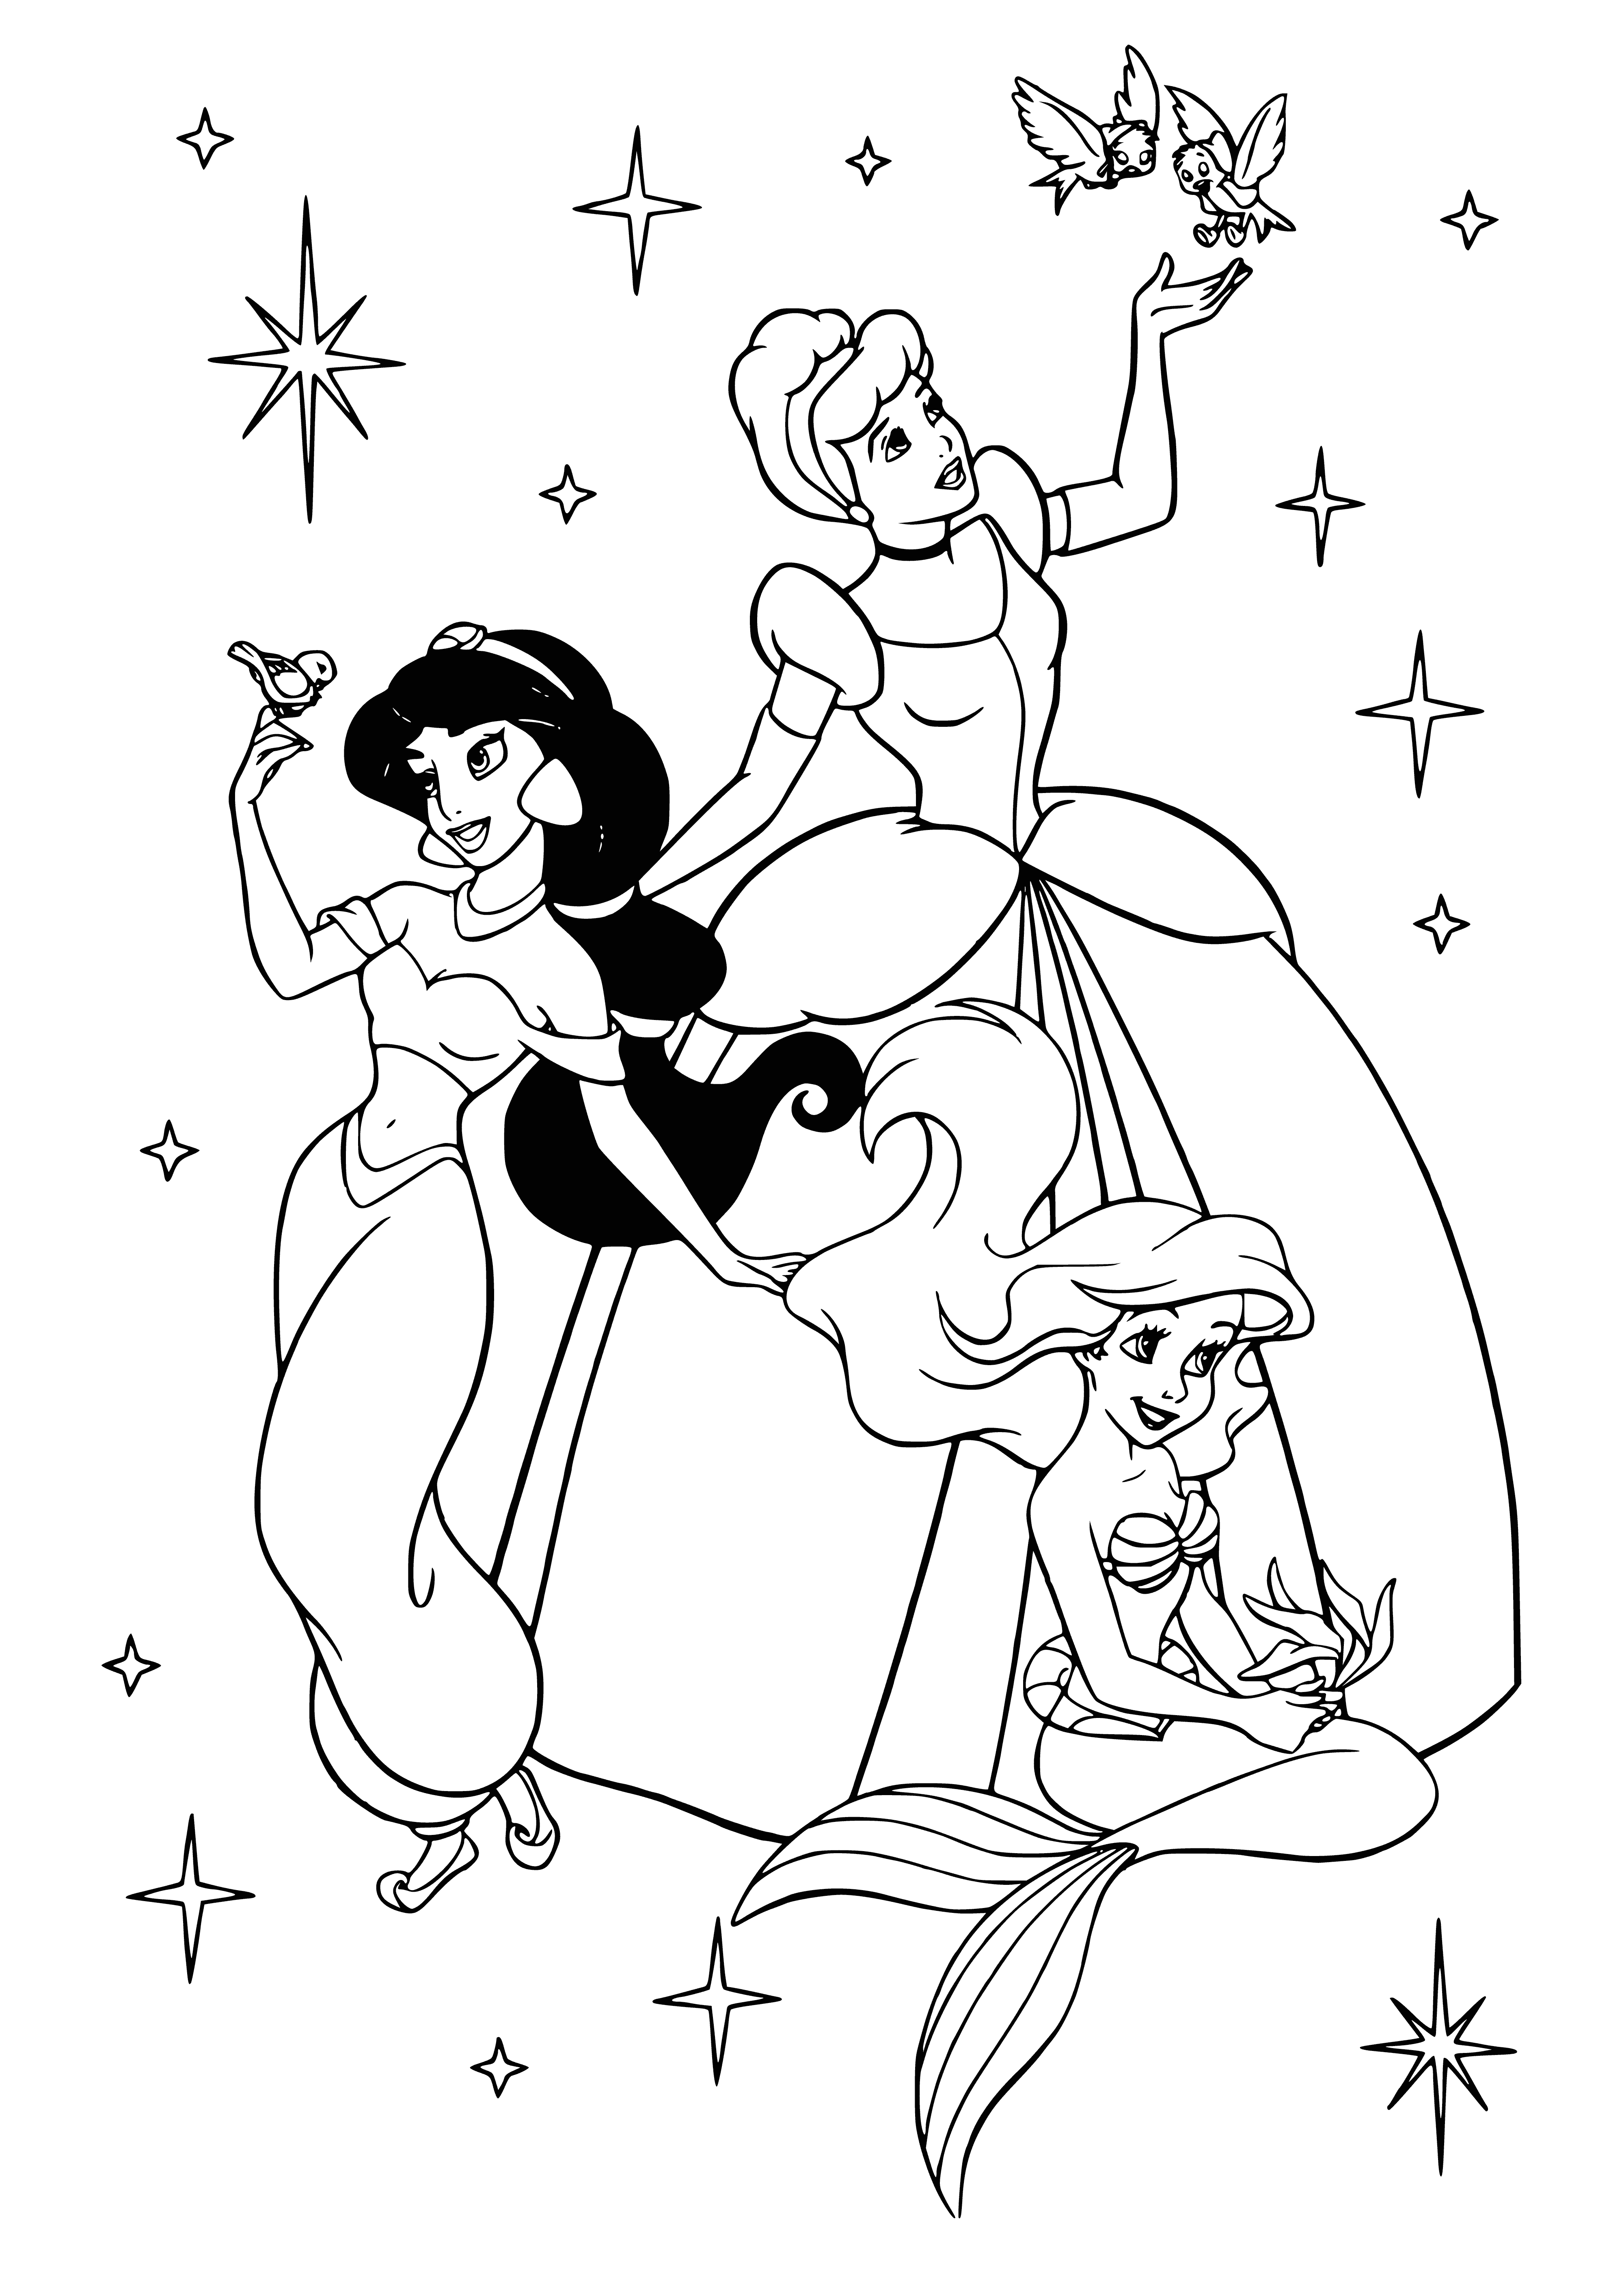 Jasmine, Cinderella and Ariel coloring page